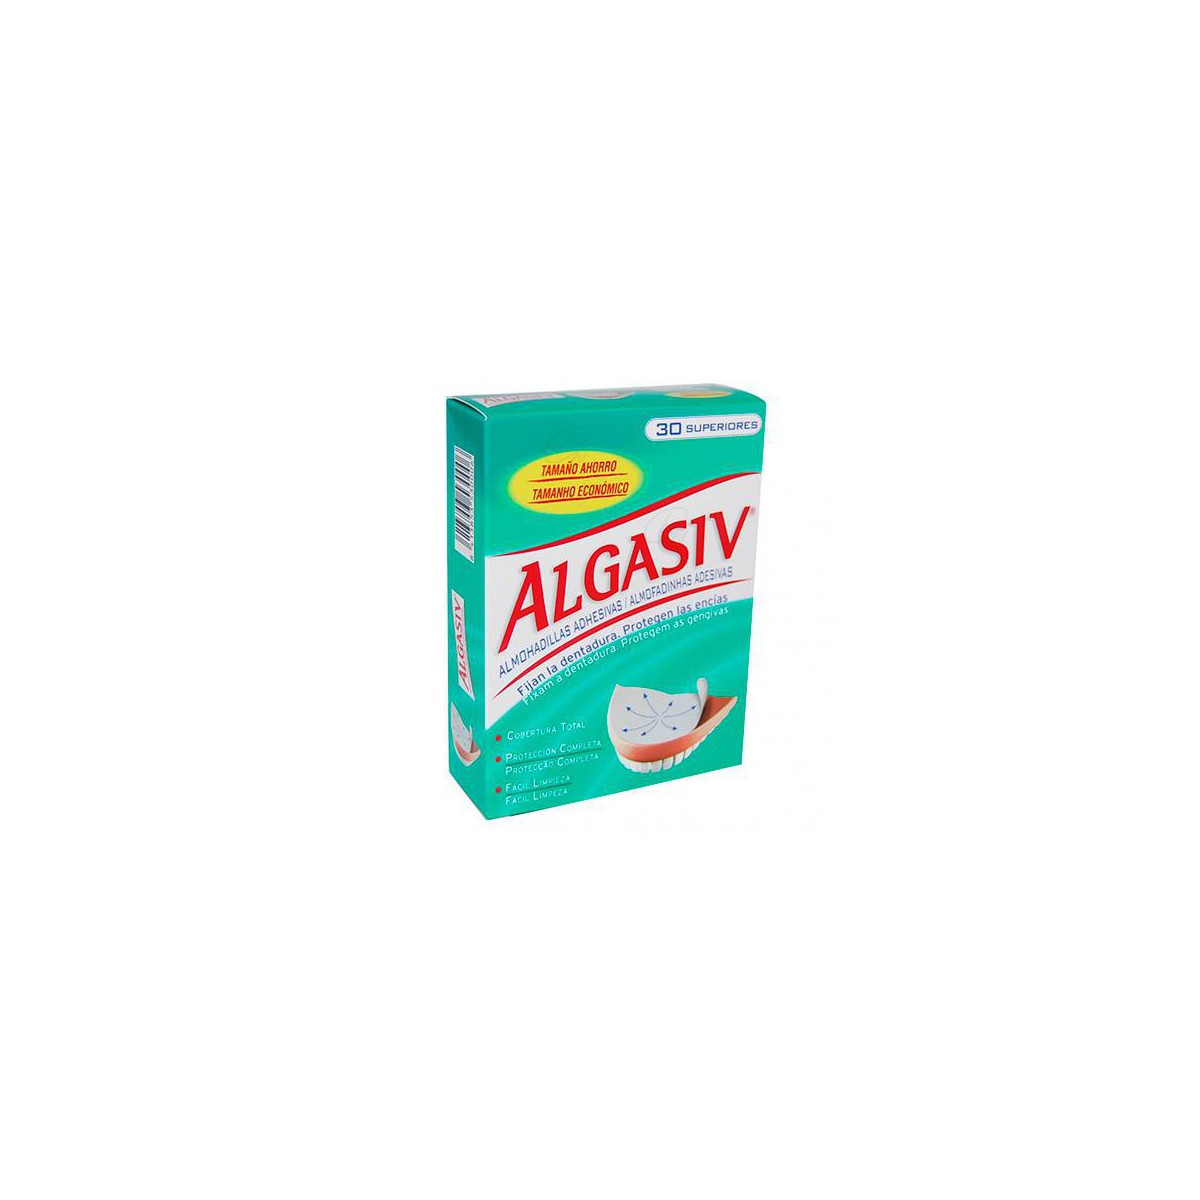 ALGASIV 30 U SUPERIOR